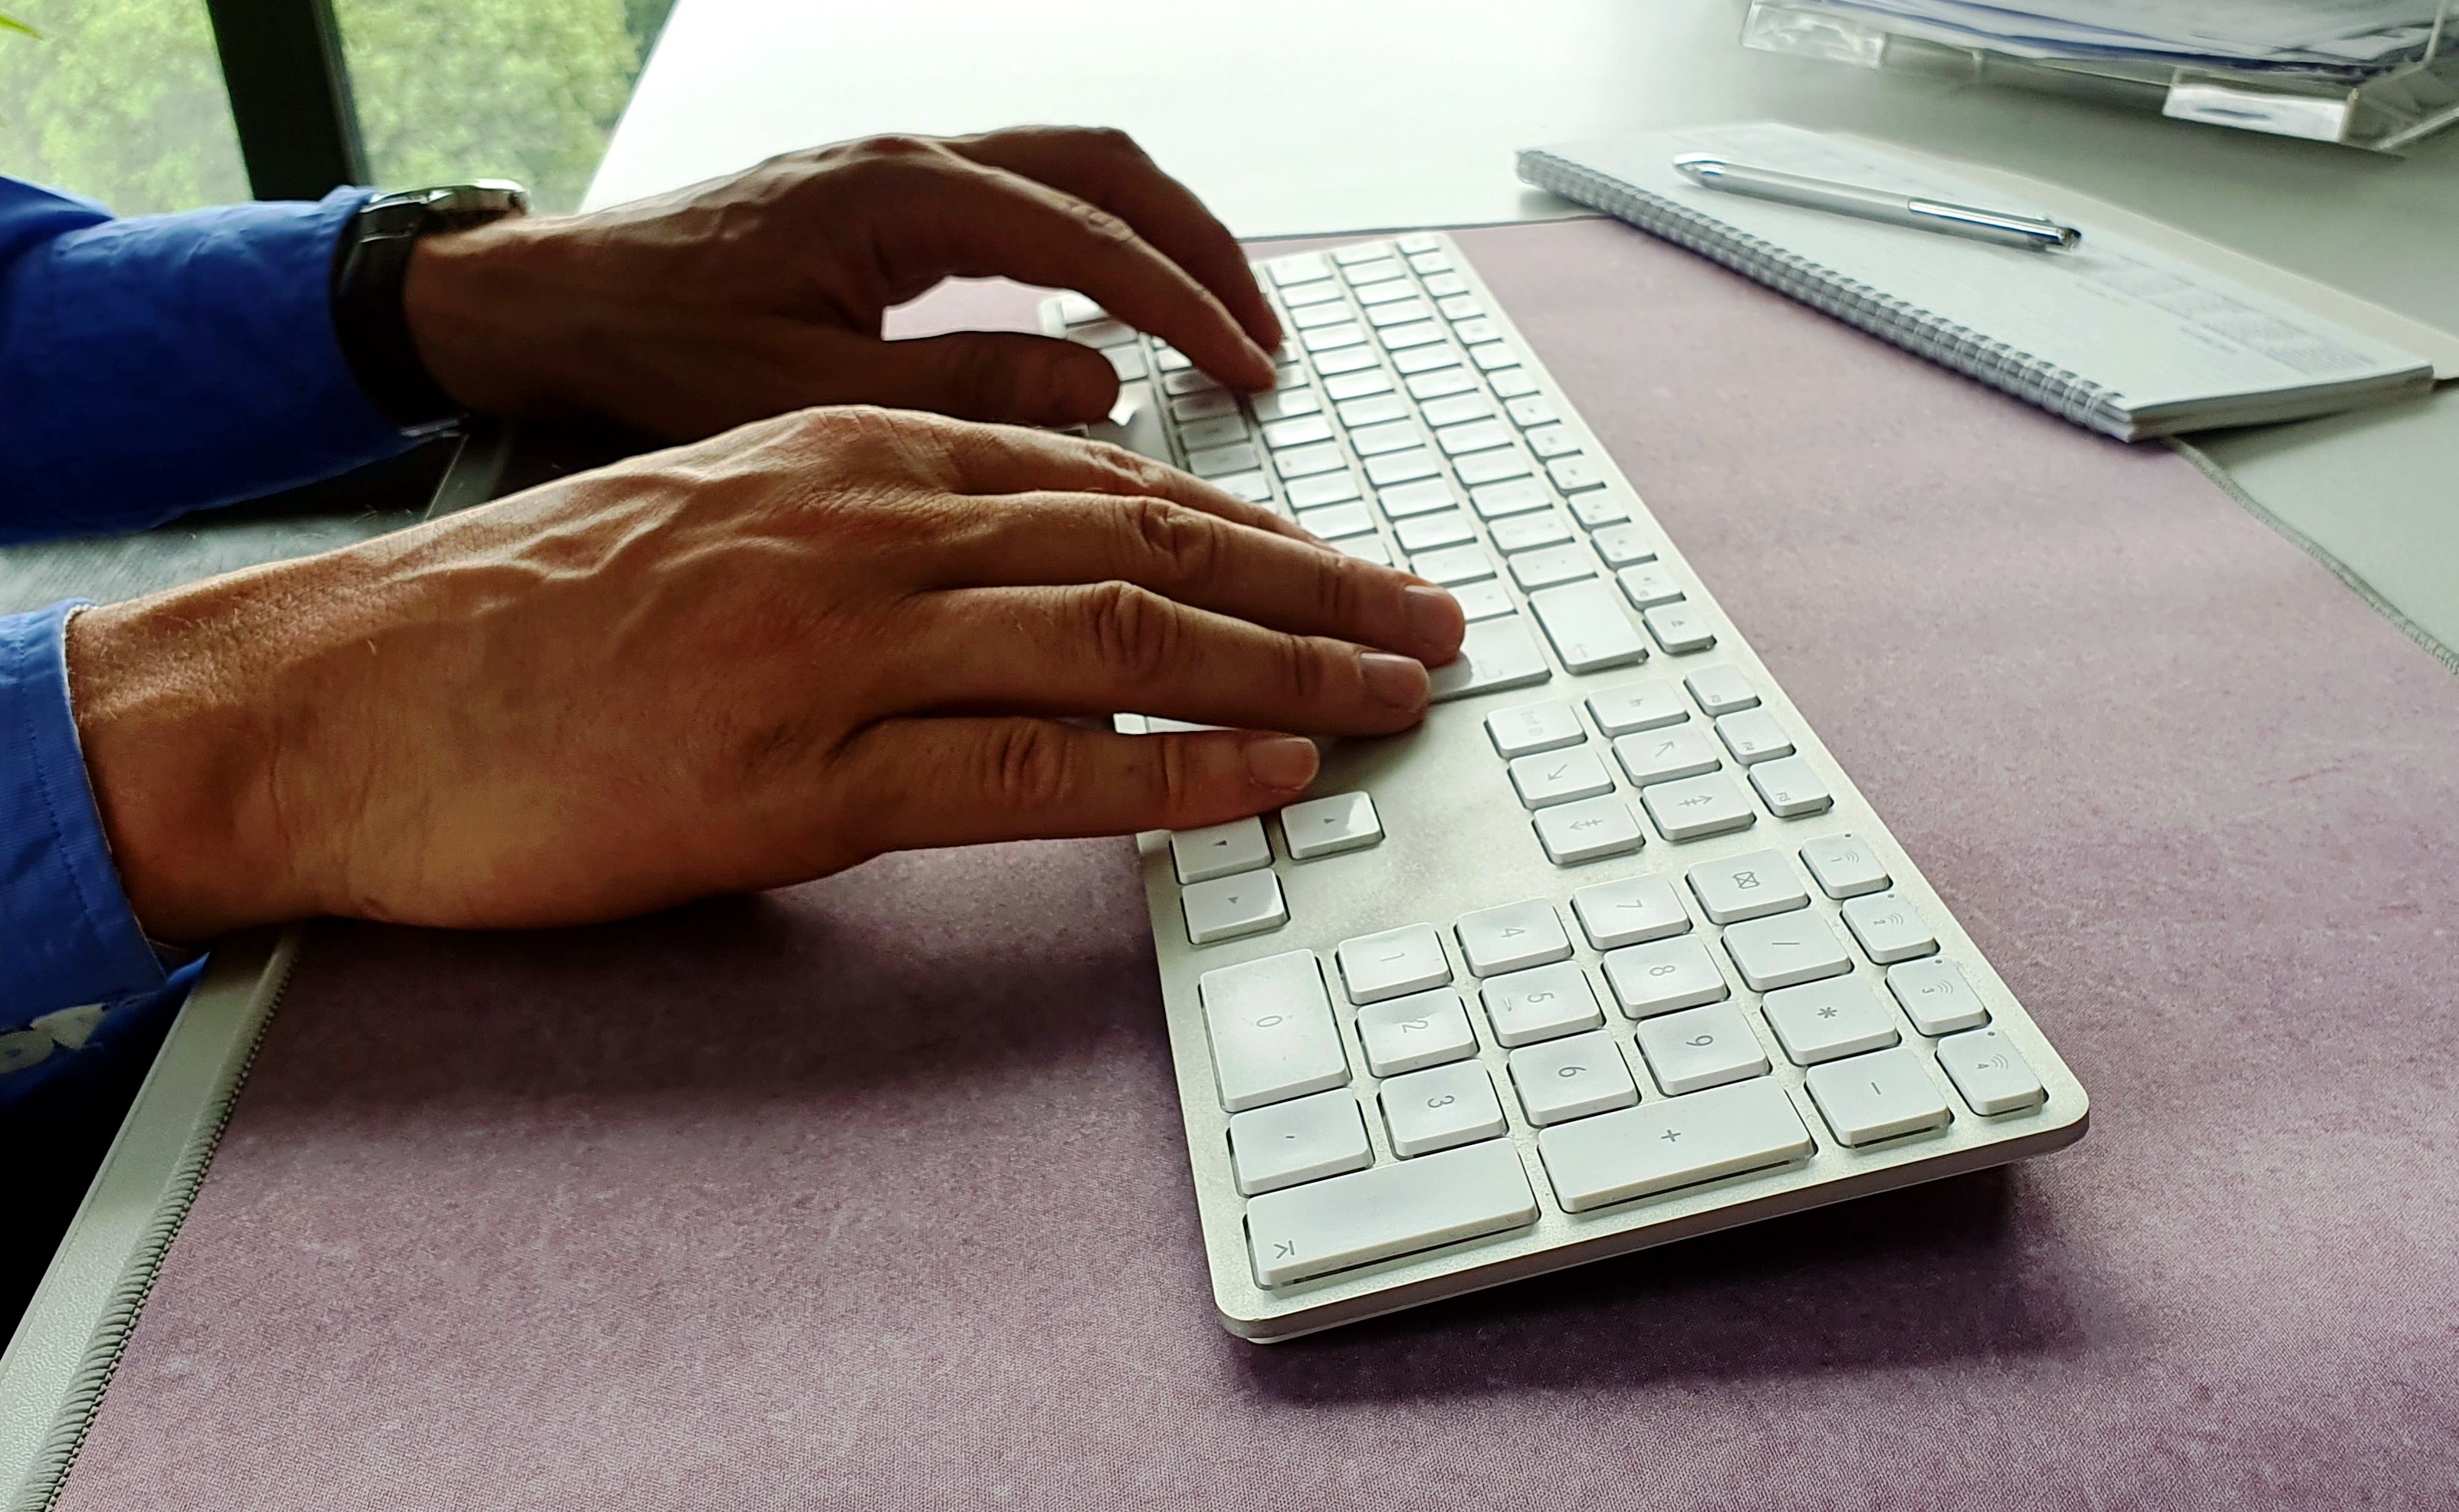 JENIMAGE Ergonomische Tastatur für Layout Kabellos DE Jahr Lebensdauer, Mac 1 Win Tastatur Batterie